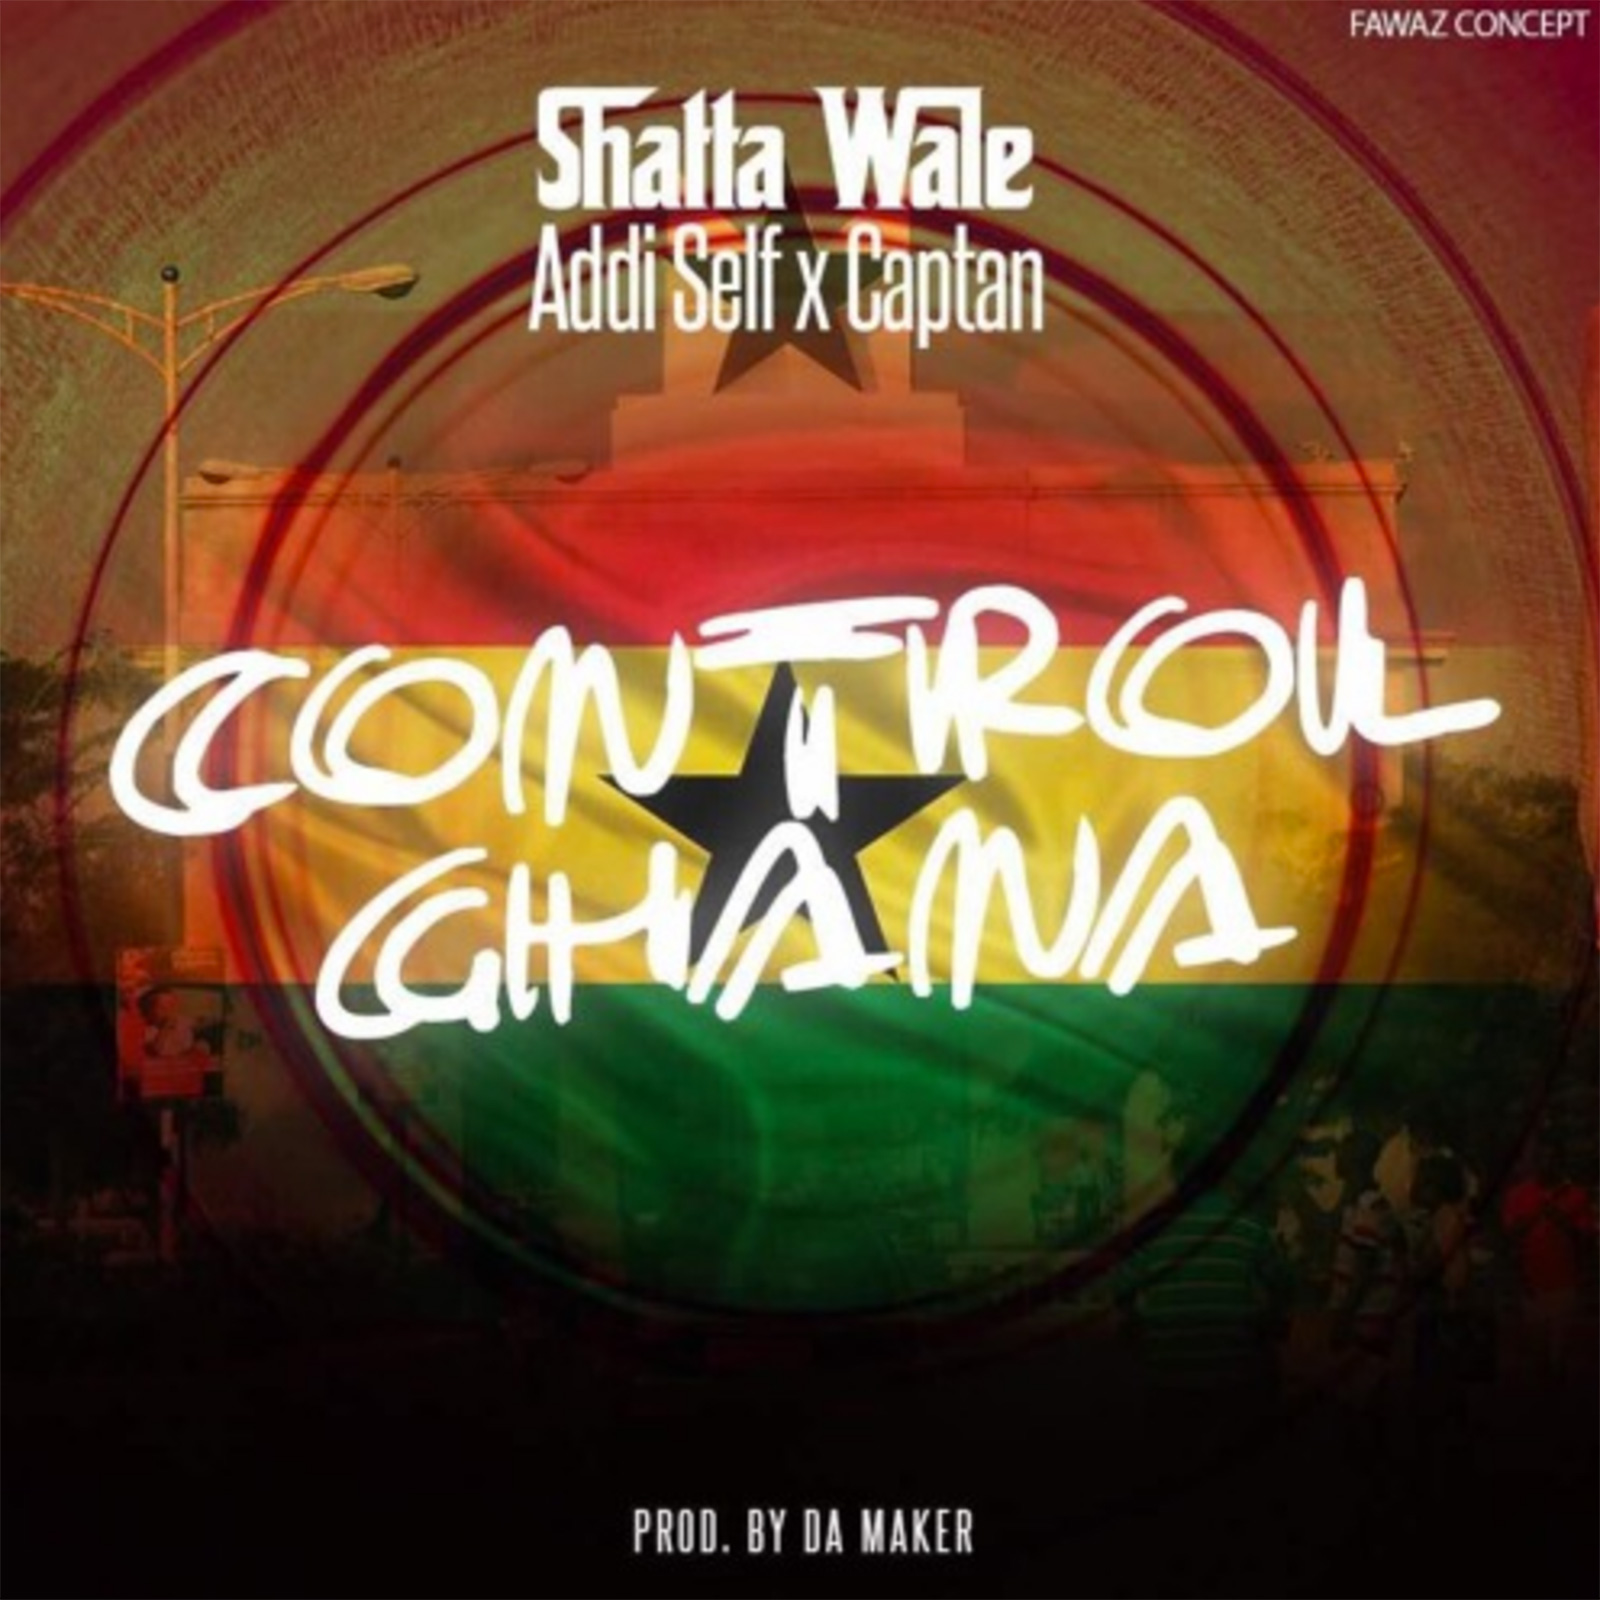 Control Ghana by Shatta Wale feat. Addi Self & Captan